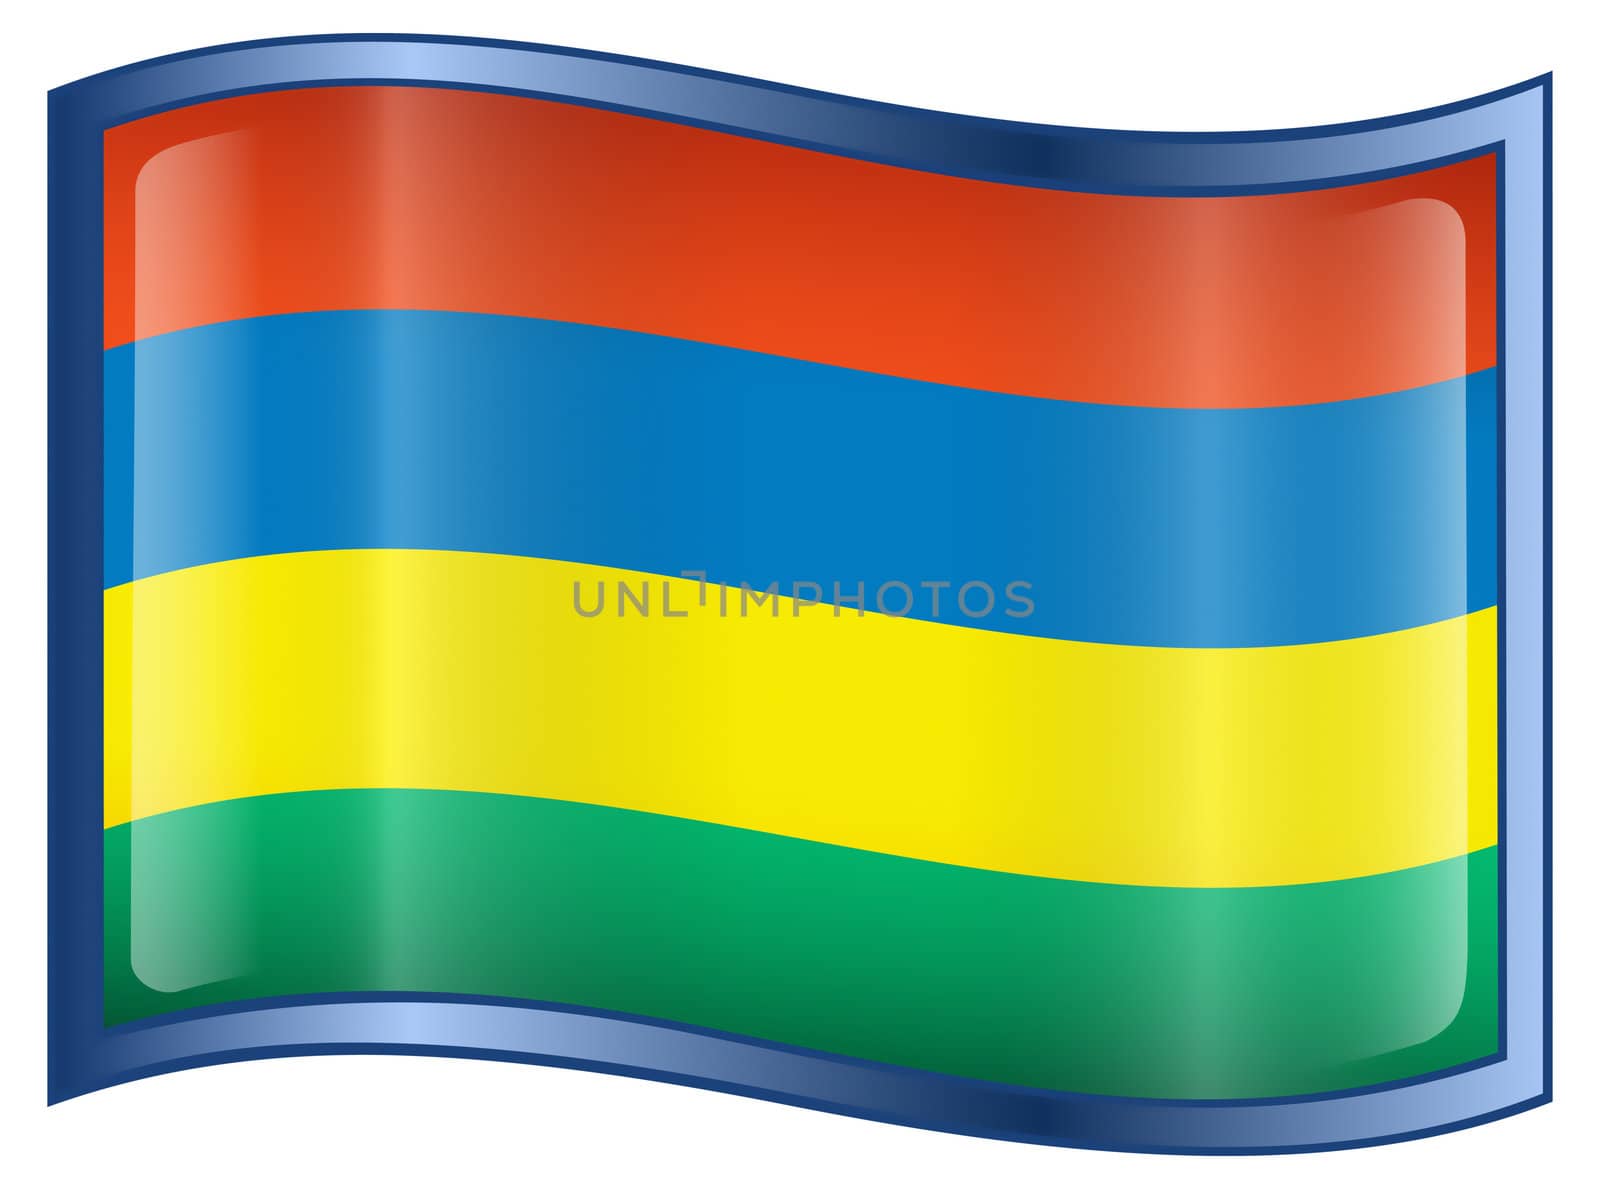 Mauritius Flag icon, isolated on white background.